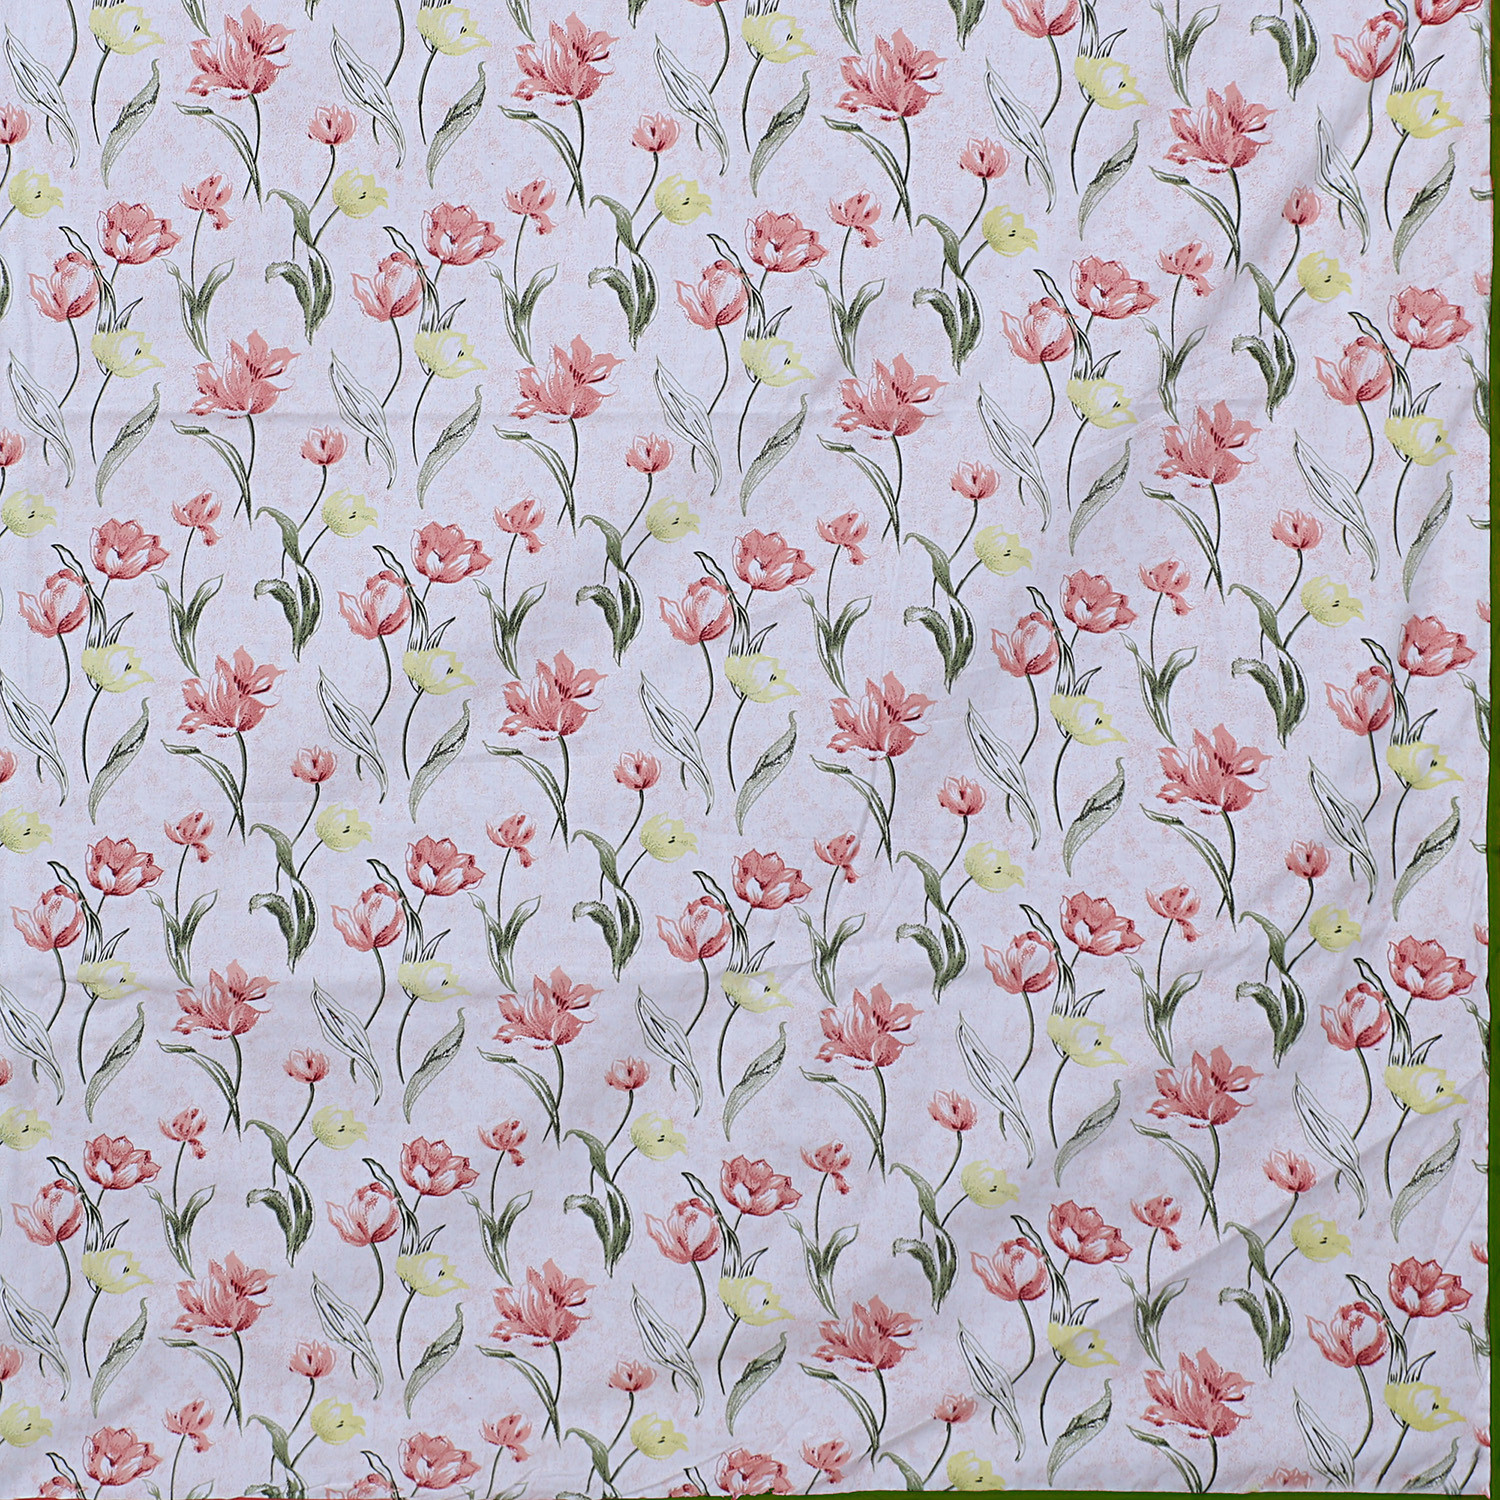 Kuber Industries Cotton Soft Lightweight Floral Design Reversible Single Bed Dohar|Blanket|AC Quilt for Home & Travel (Light Pink)